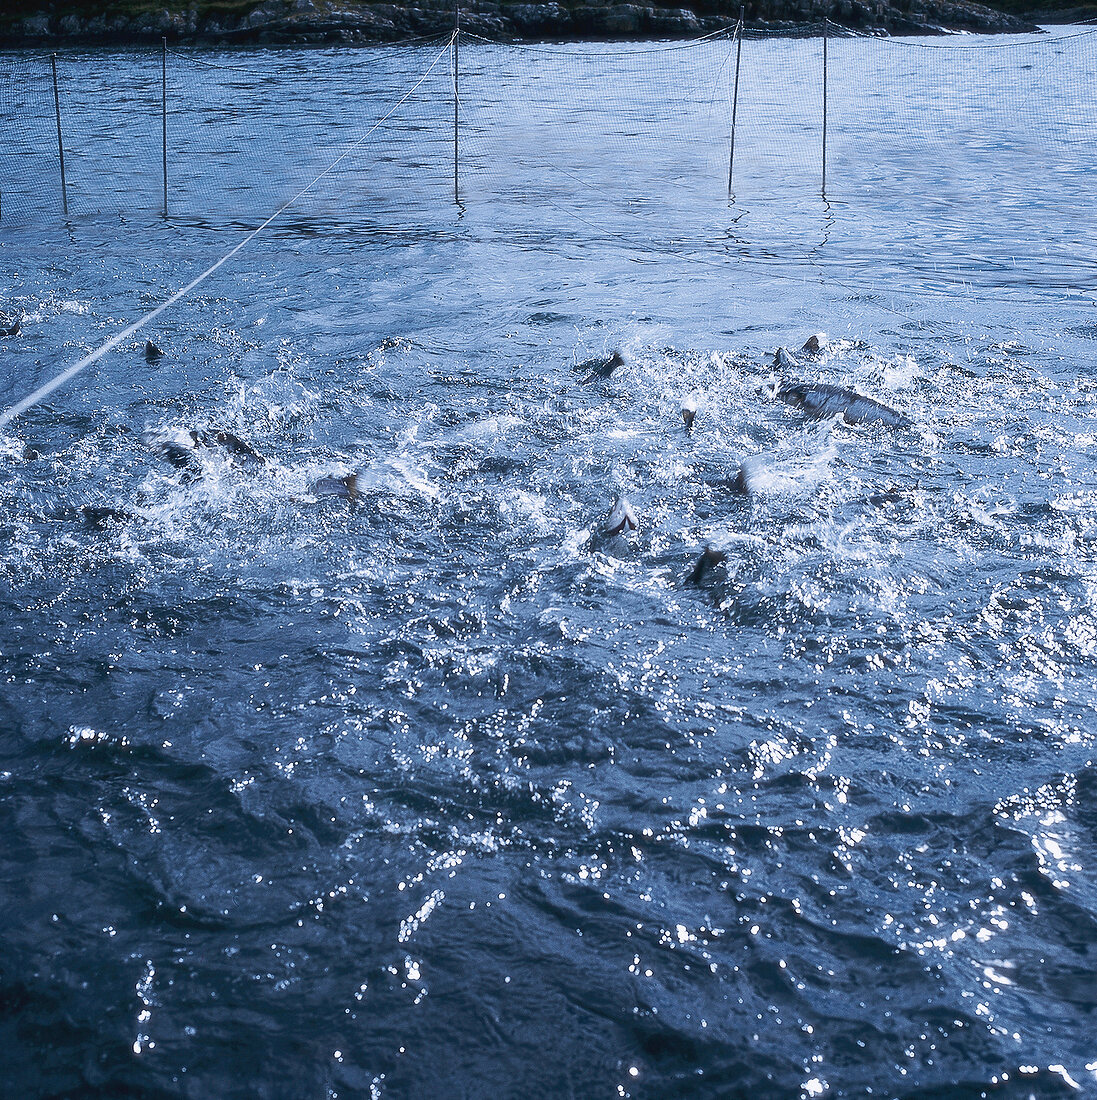 Fisch, Norwegen: Zuchtfische im Wasser